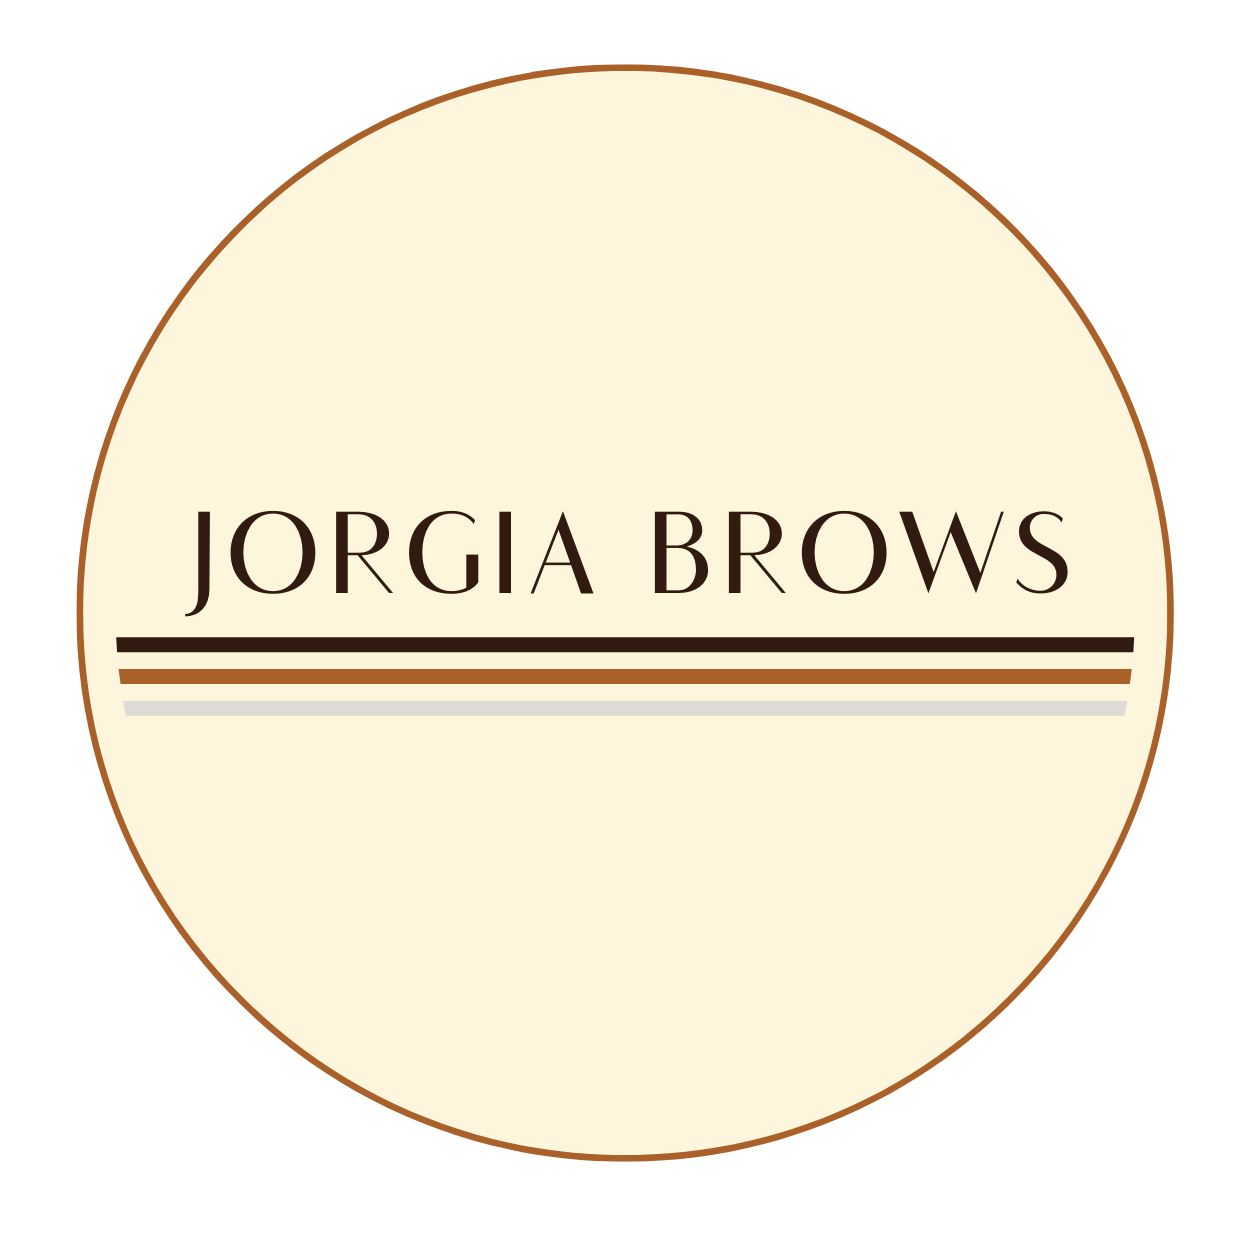 Jorgia Brows